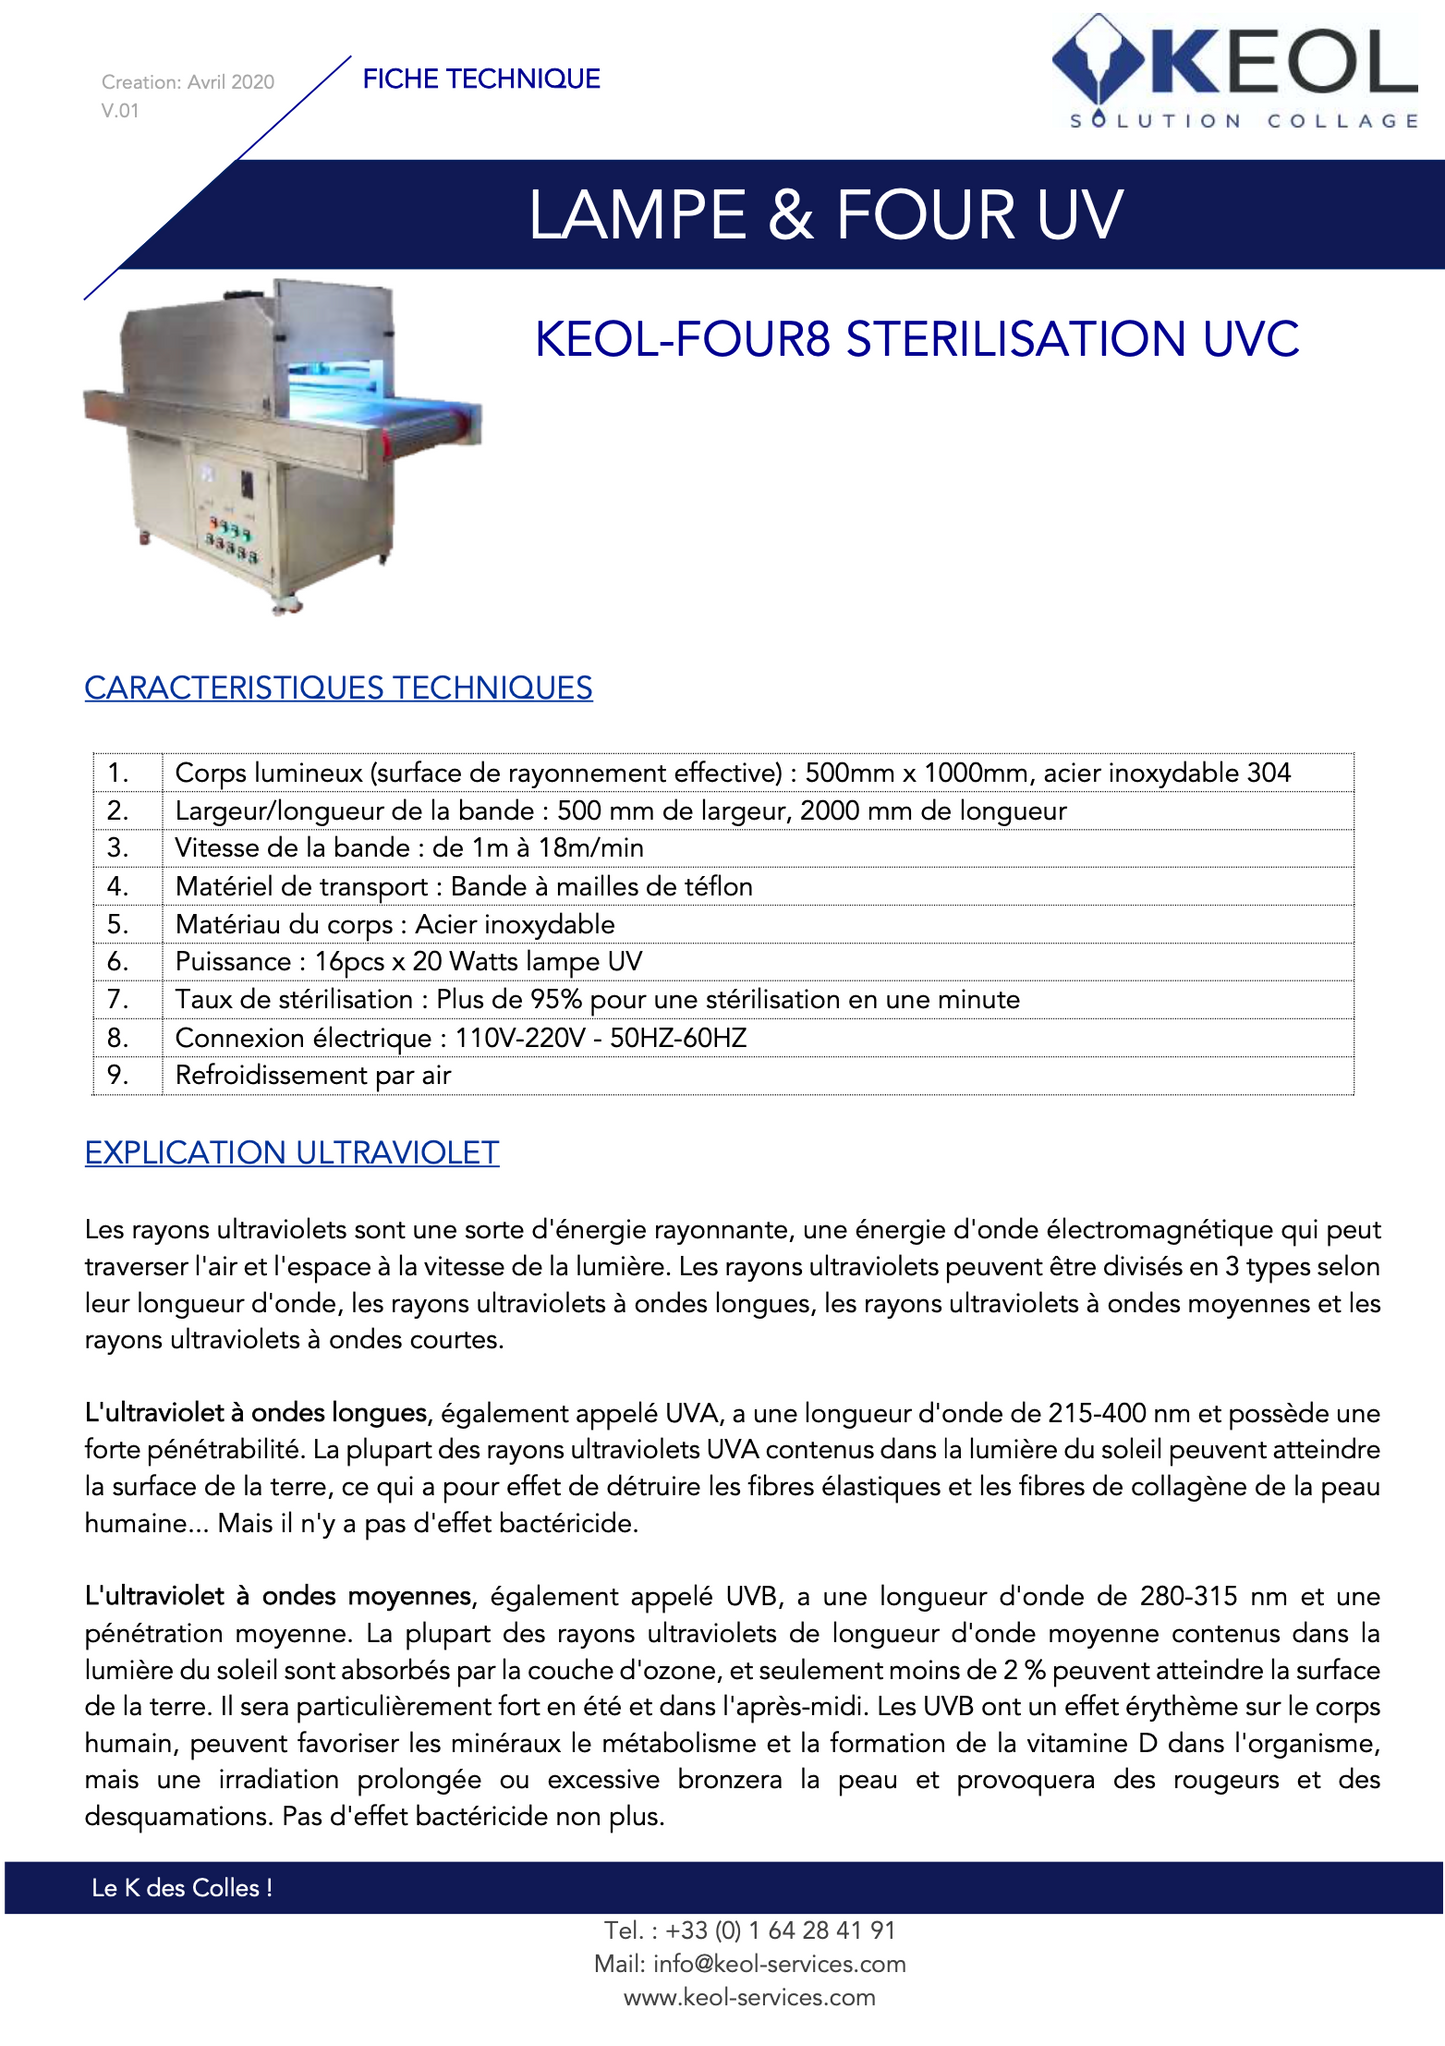 KEOL-FOUR STERILISATON UVC